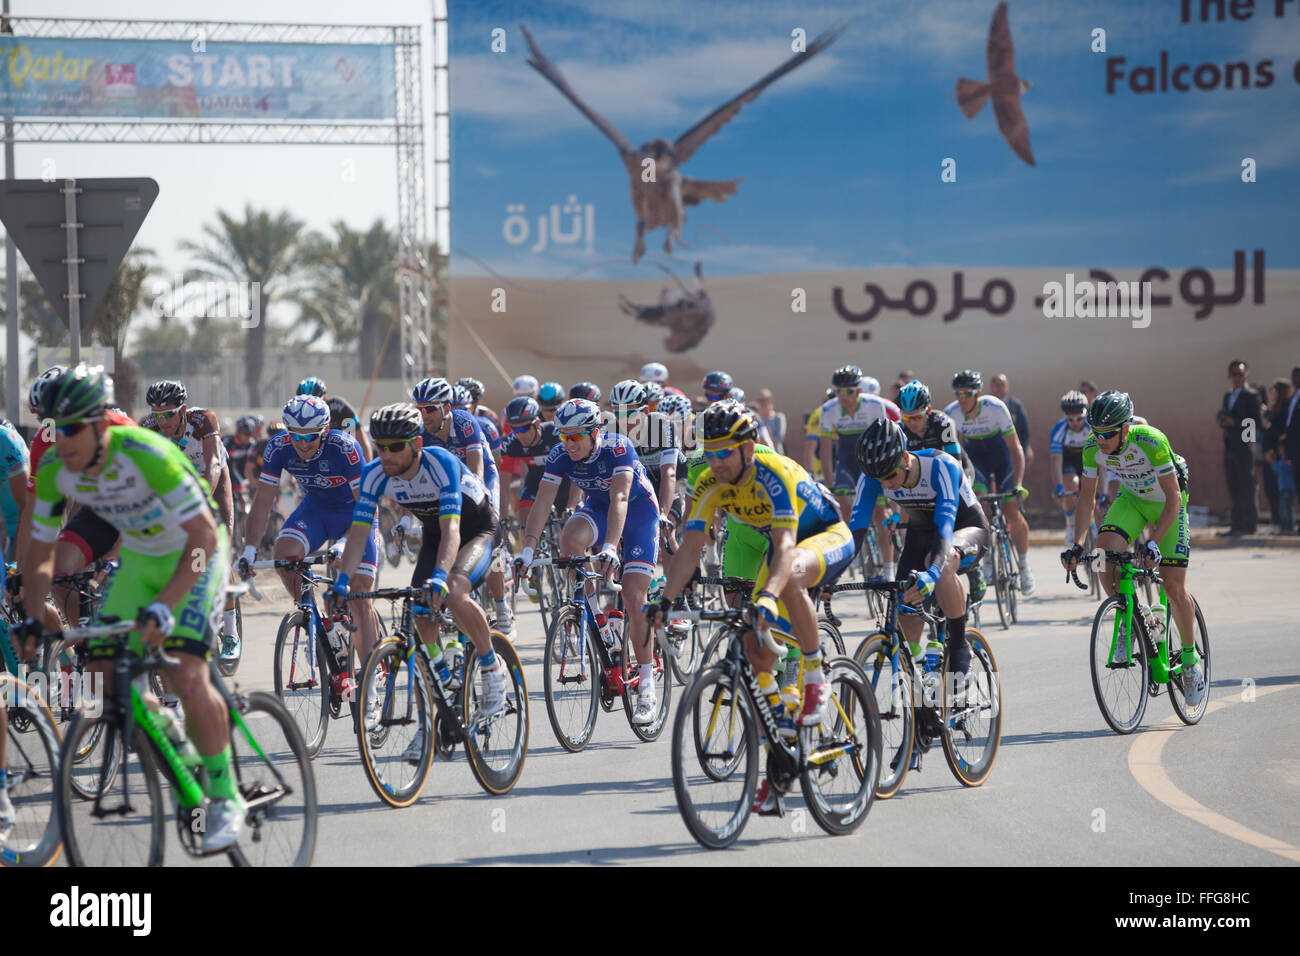 Tour de Qatar 2014. Carrera ciclista en el desierto. Carreras de bicicleta  de Oriente Medio Fotografía de stock - Alamy